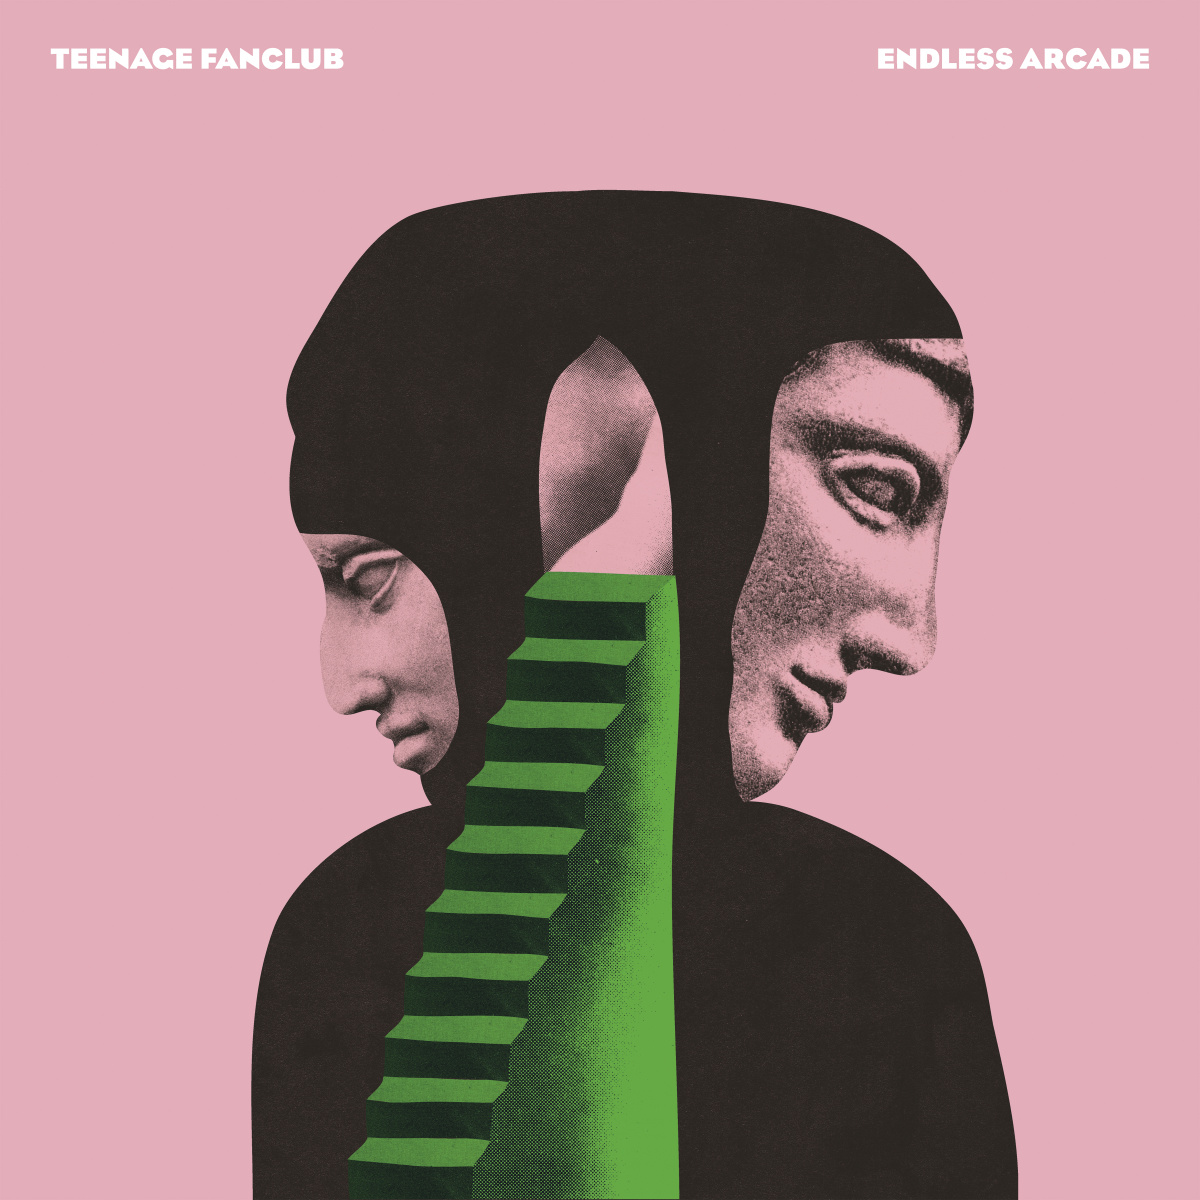 Teenage Fanclub - Endless Arcade LP (ltd.ed. pink vinyl) - Wax Trax Records